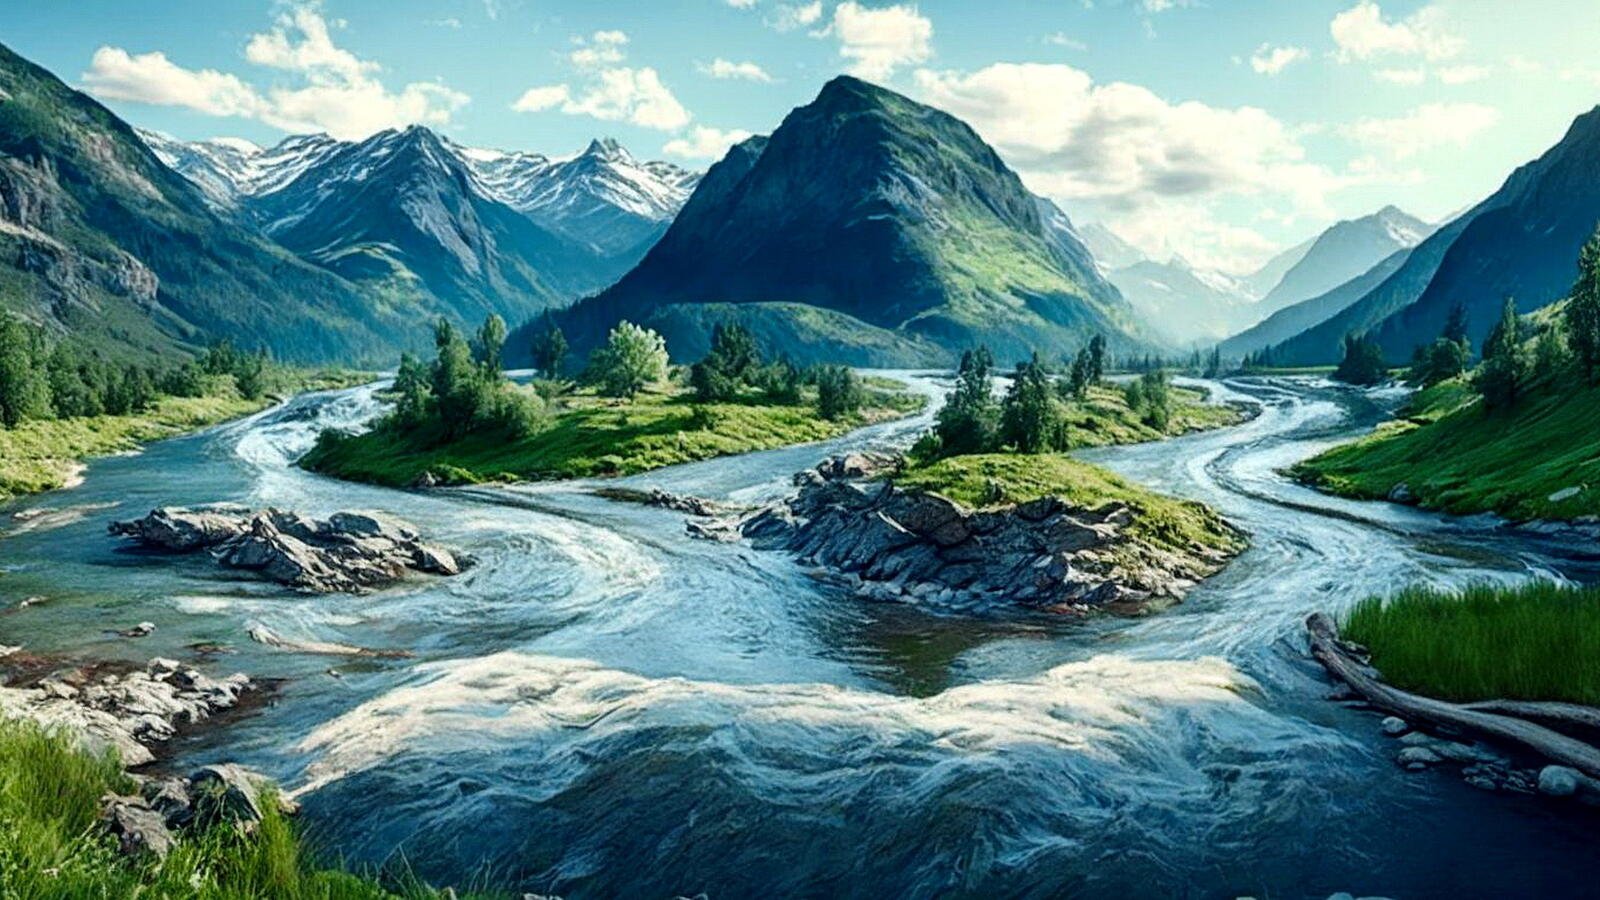 Бесплатное фото Река на фоне горного пейзажа